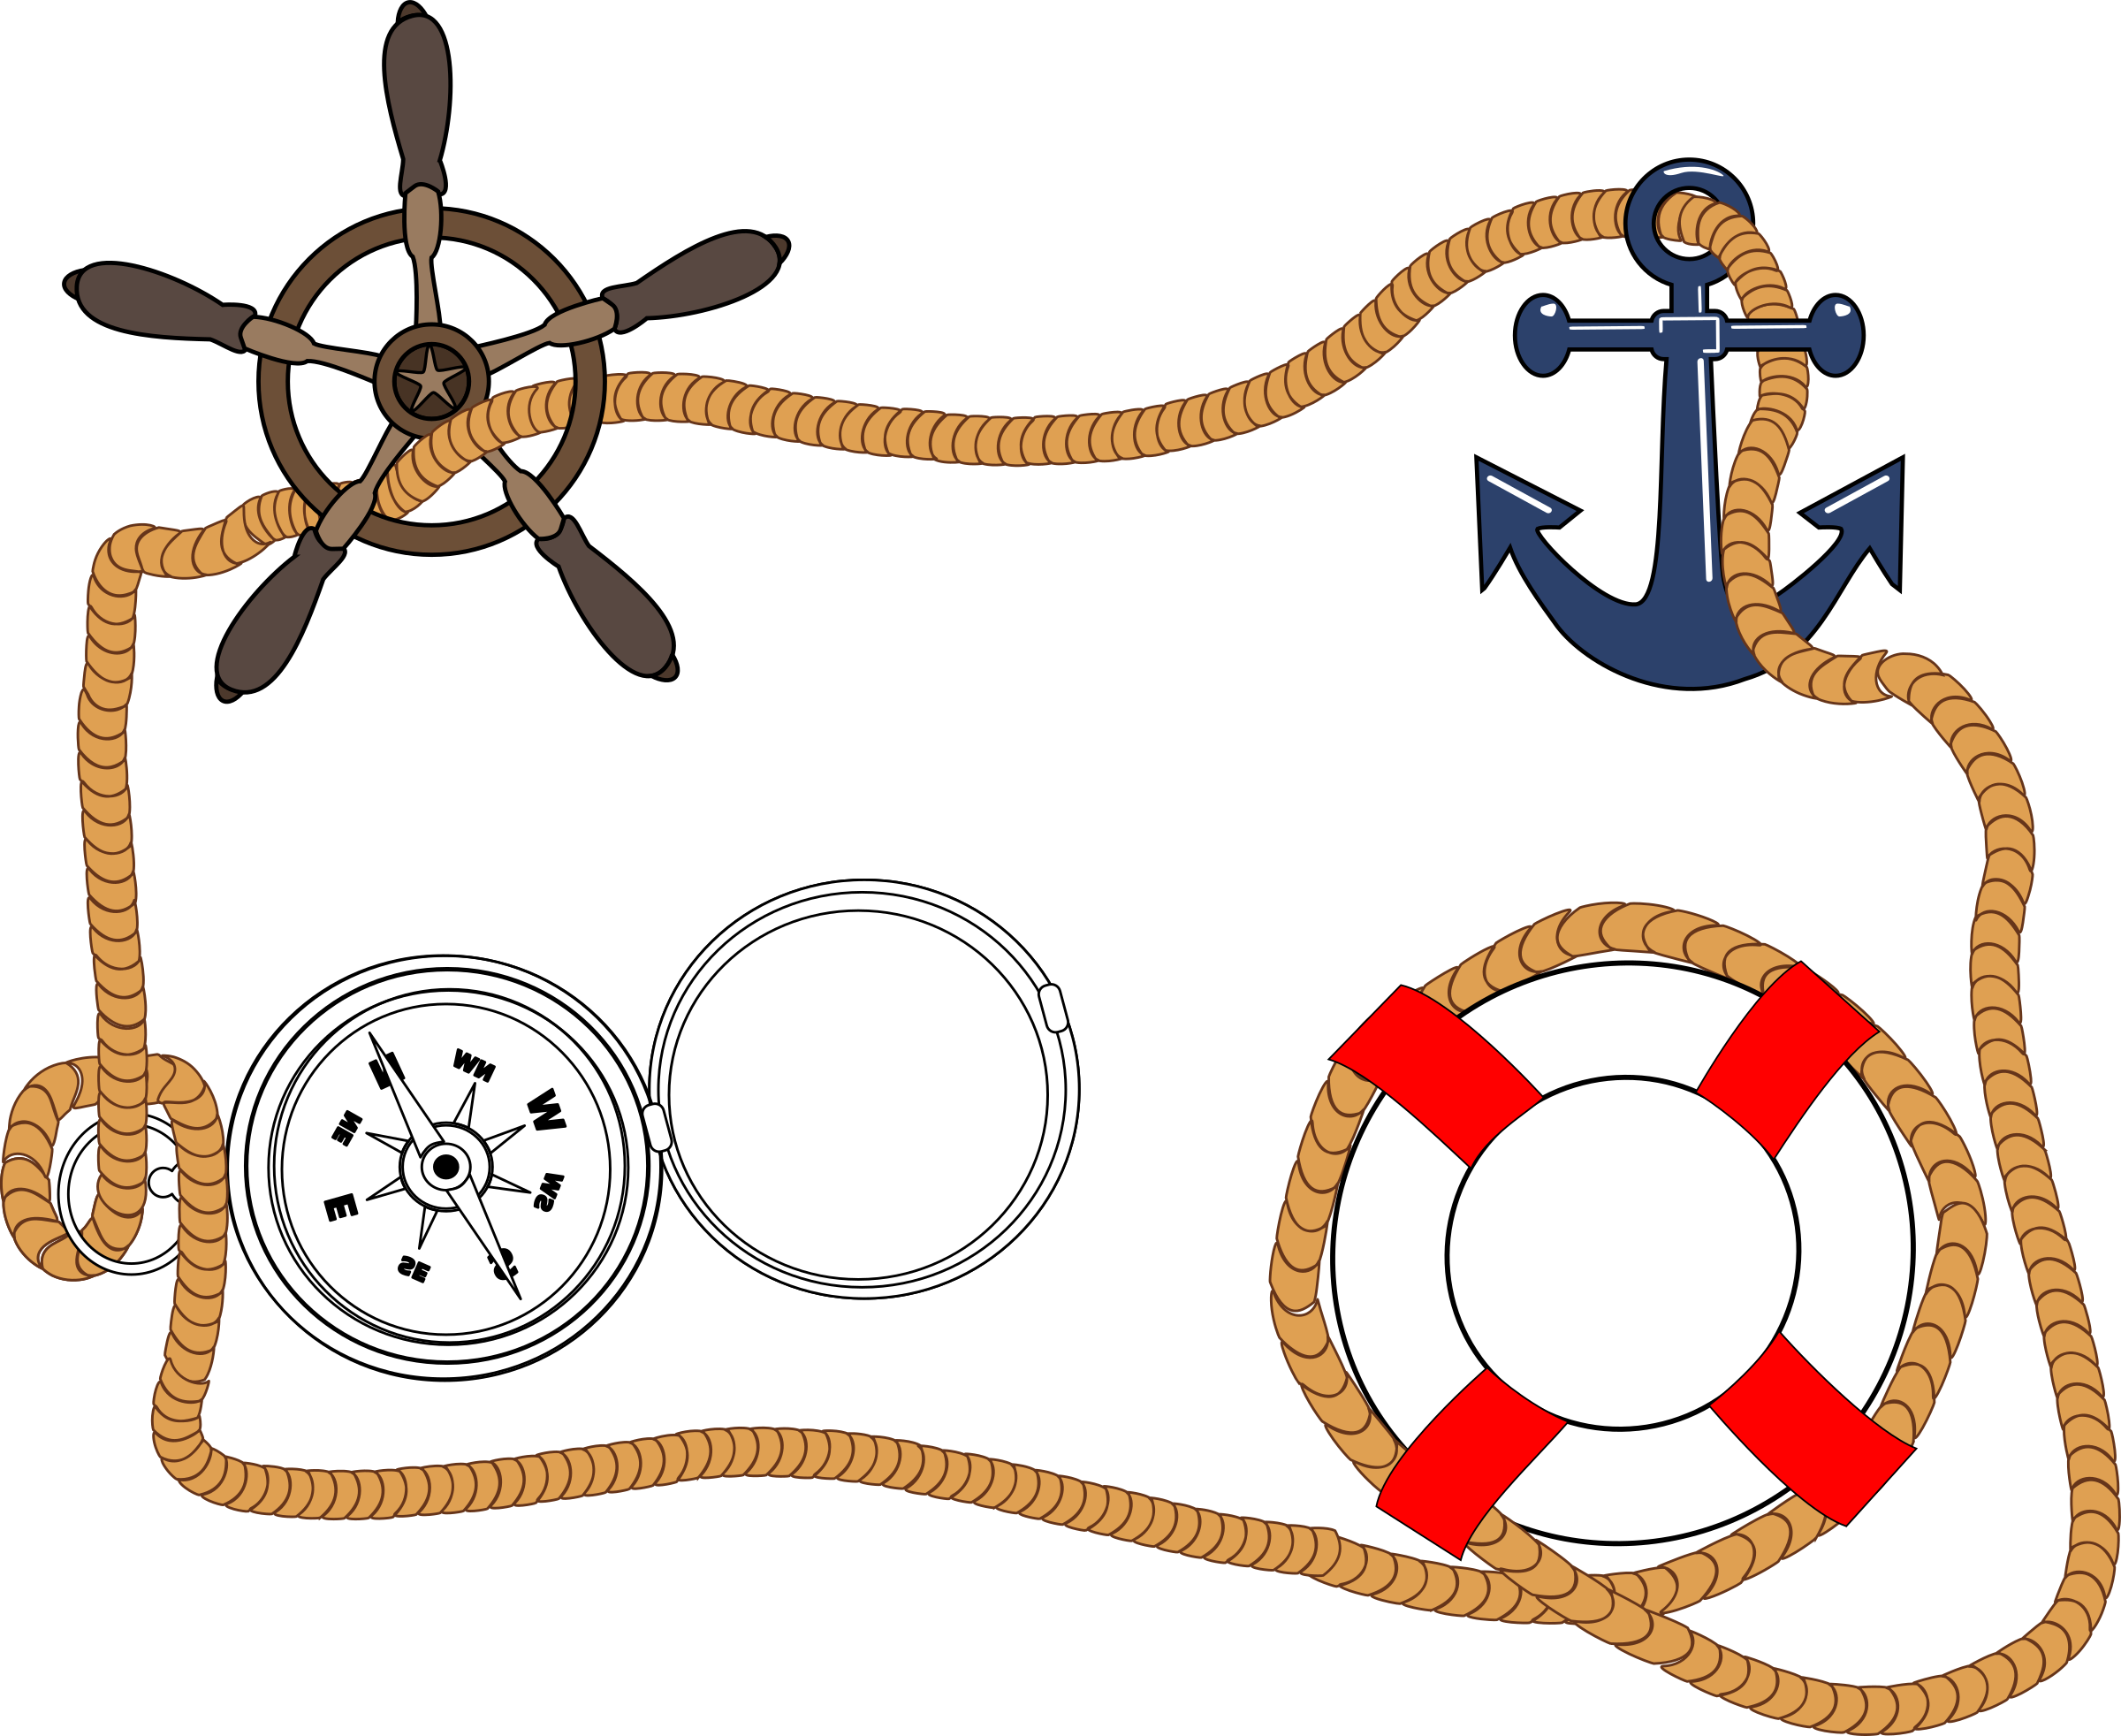 sailor clipart themed